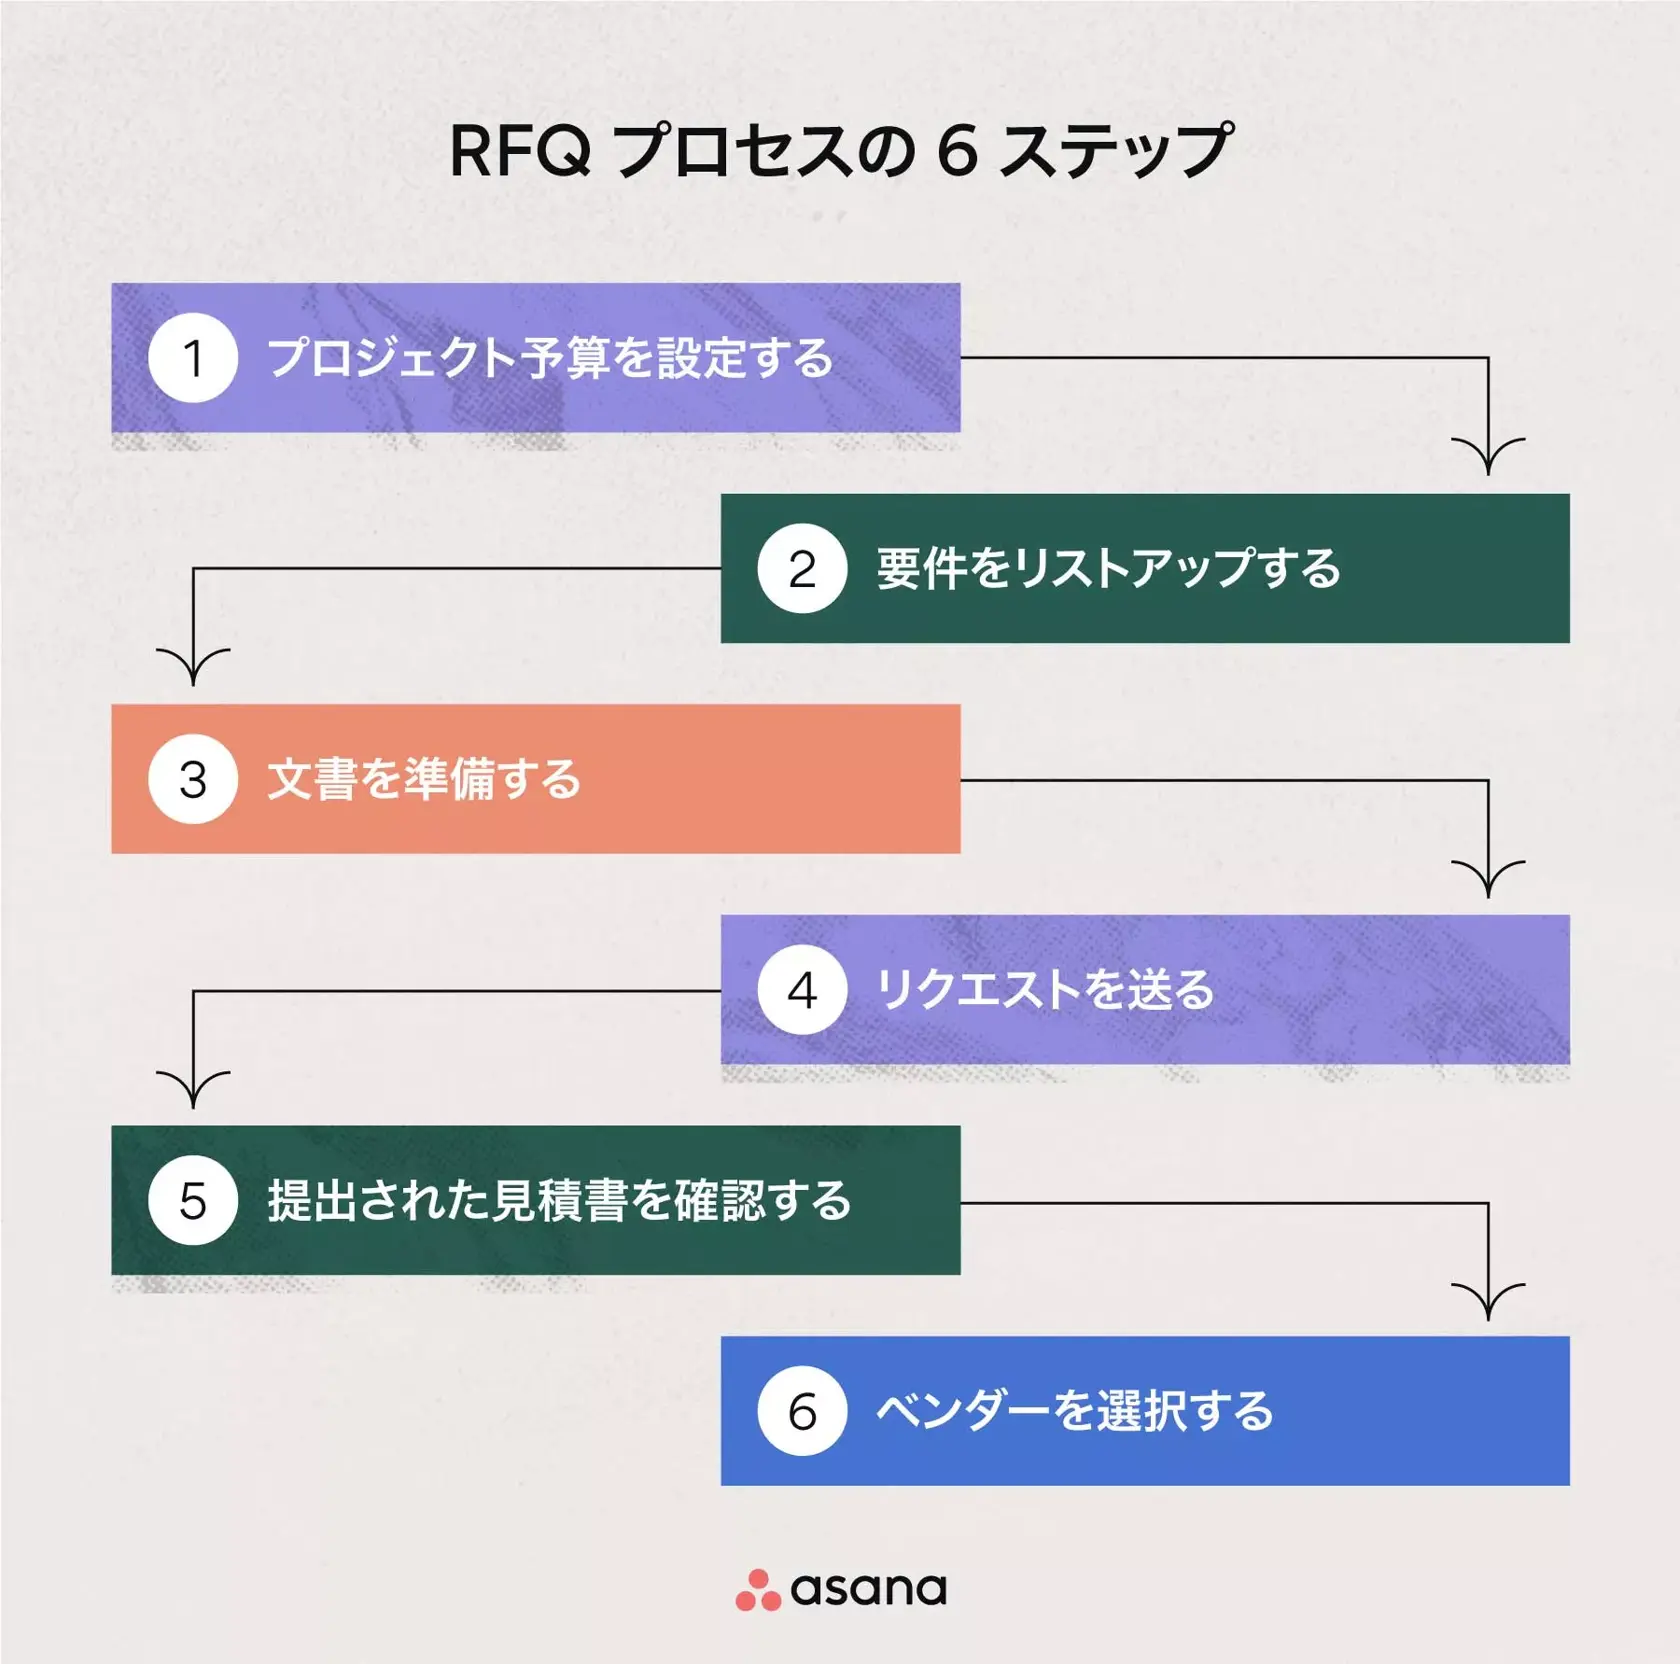 RFQ プロセスの 6 ステップ